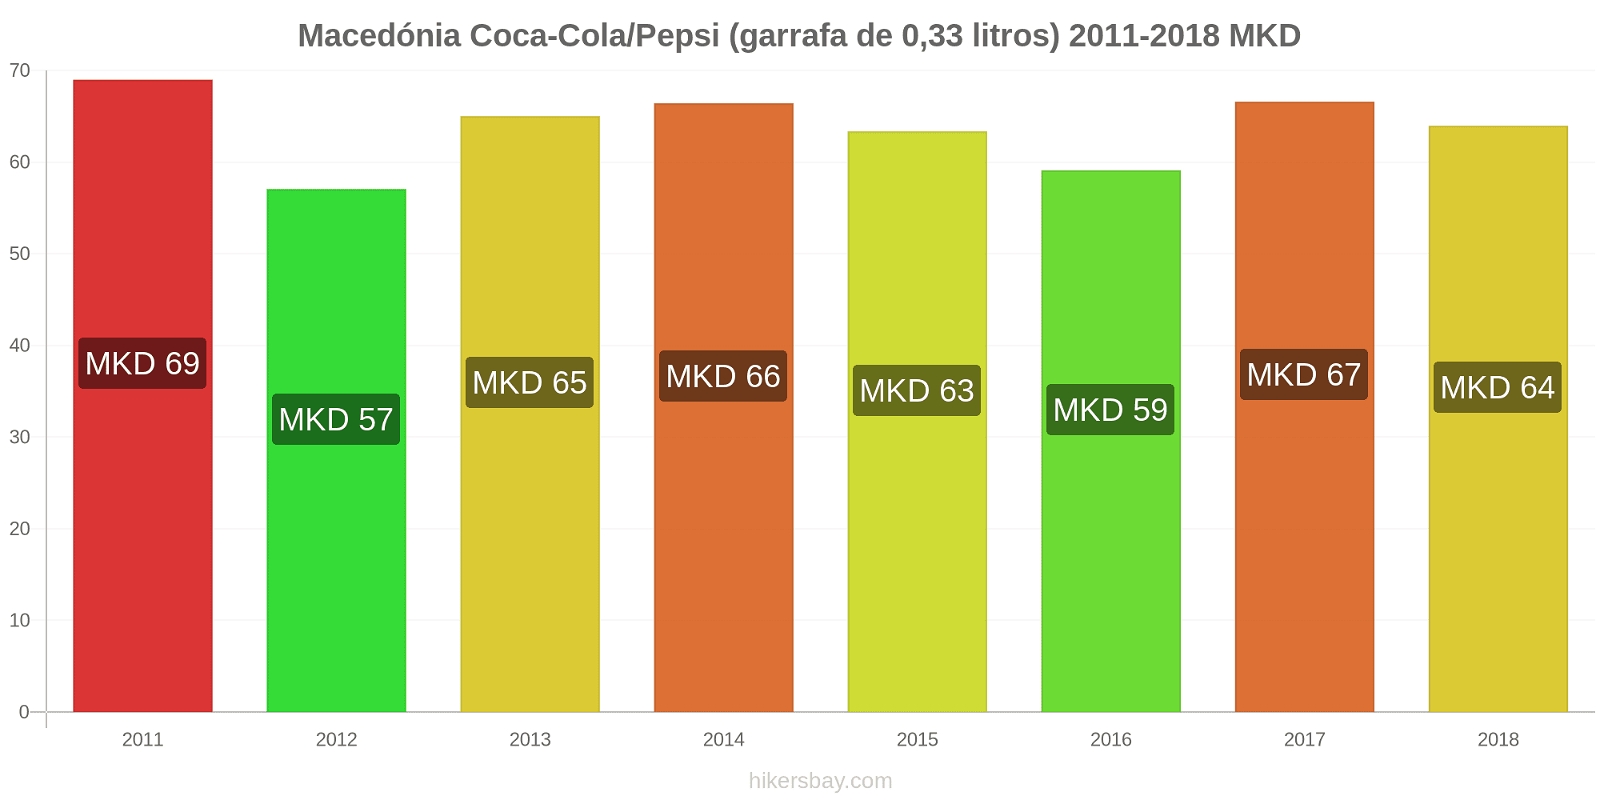 Macedónia mudanças de preços Coca-Cola/Pepsi (garrafa de 0.33 litros) hikersbay.com